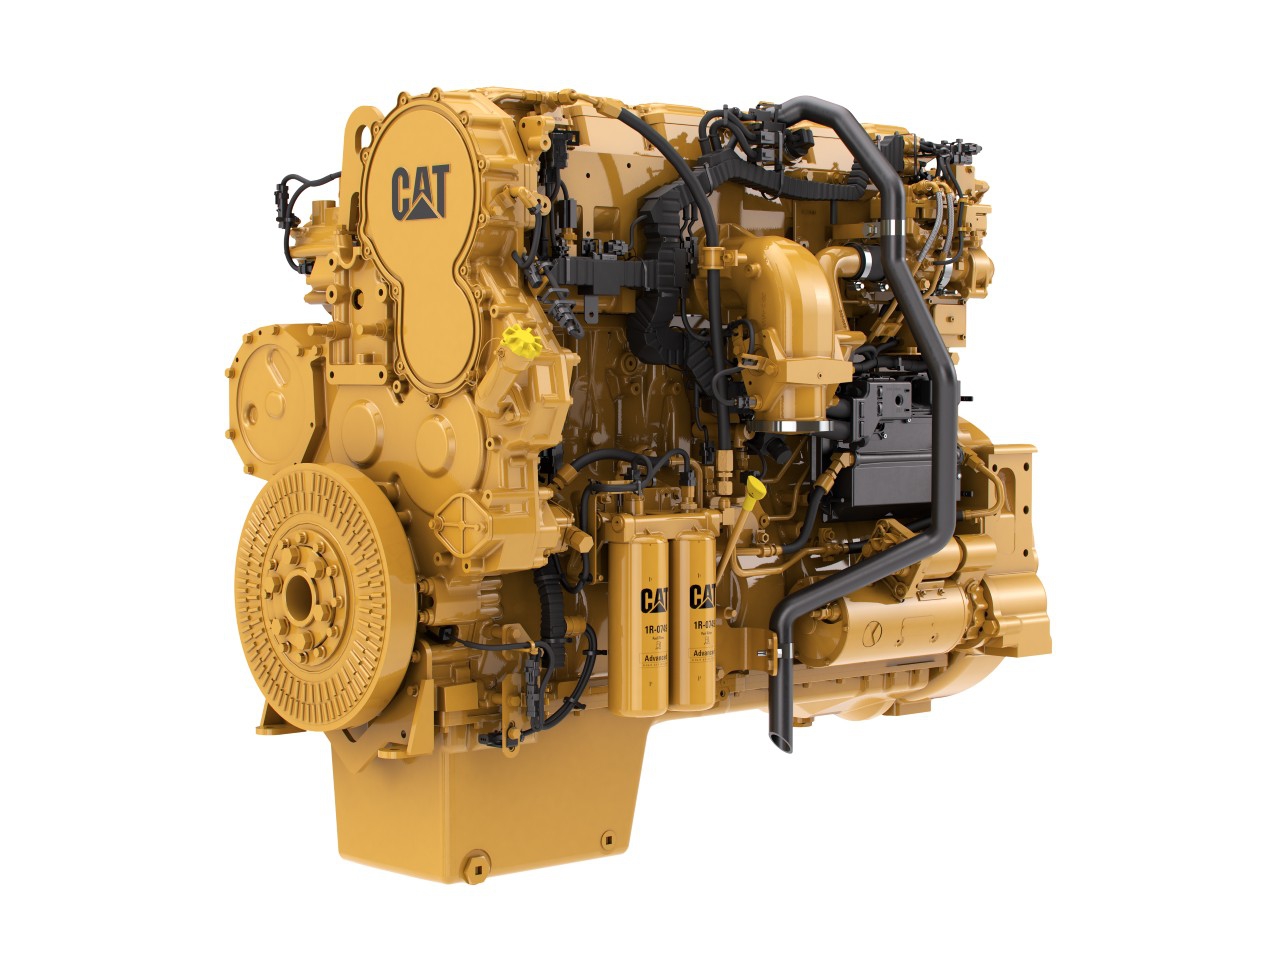 Priemyslený motor Cat C18 - 429-597 kW